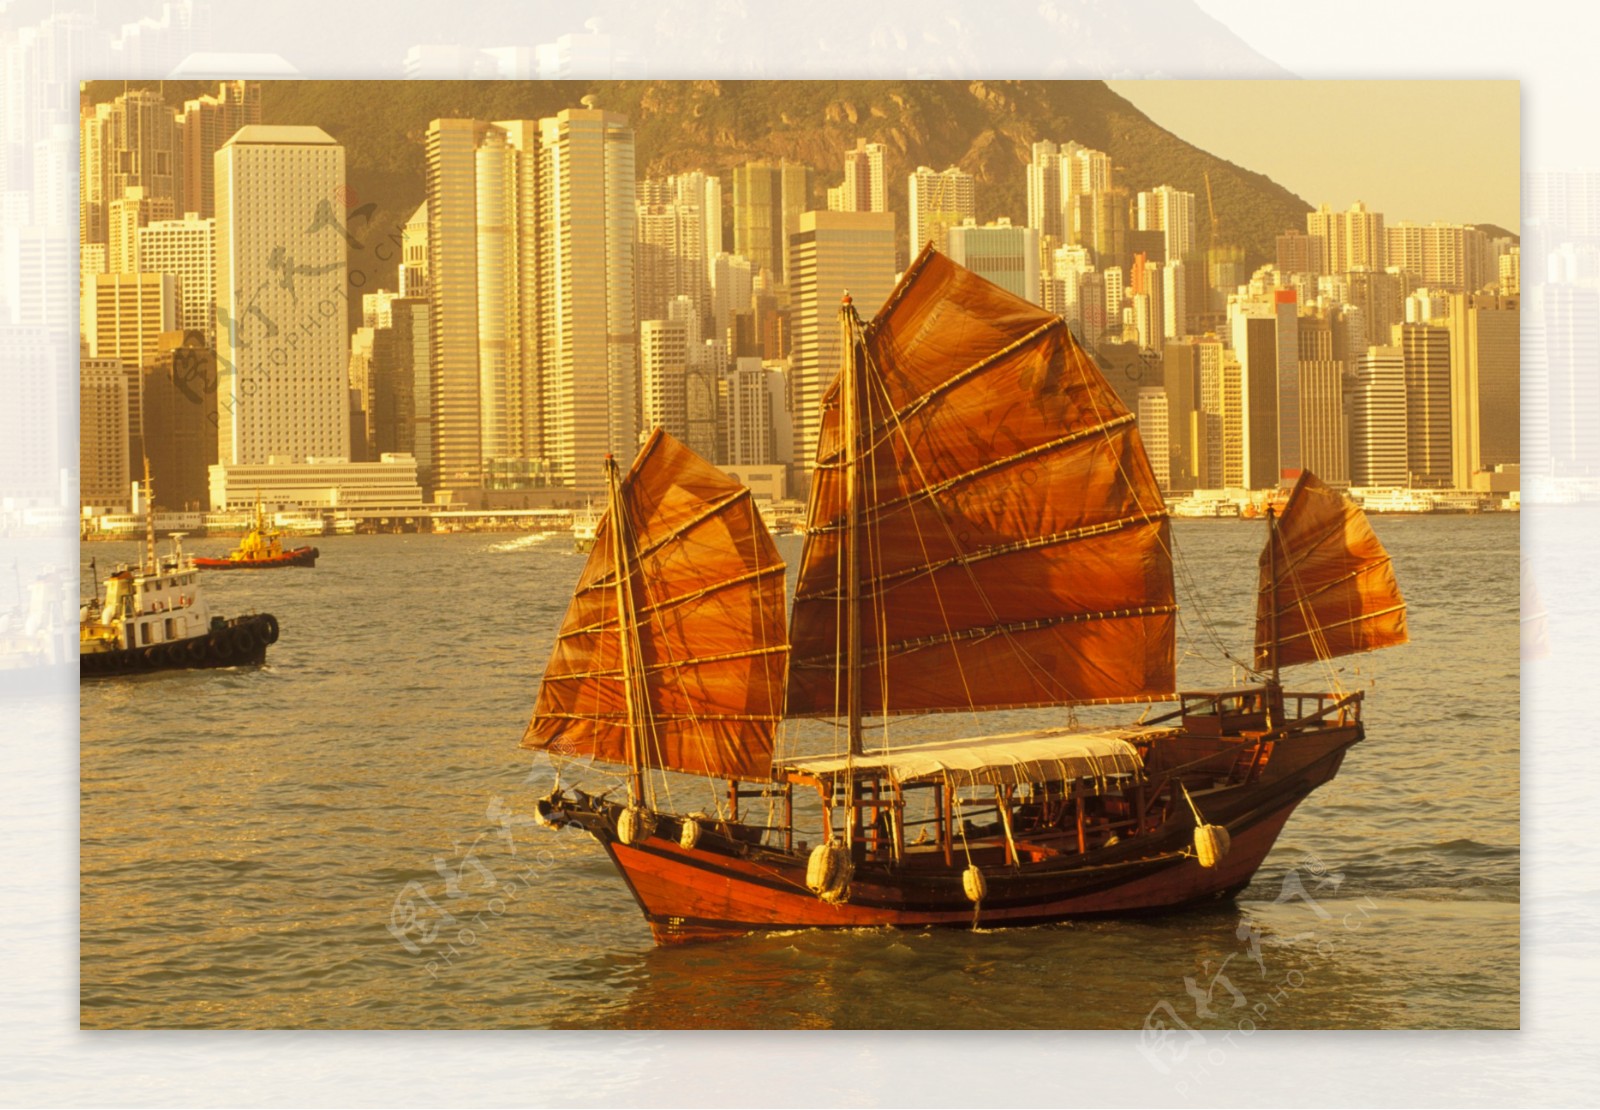 香港海面上的帆船图片